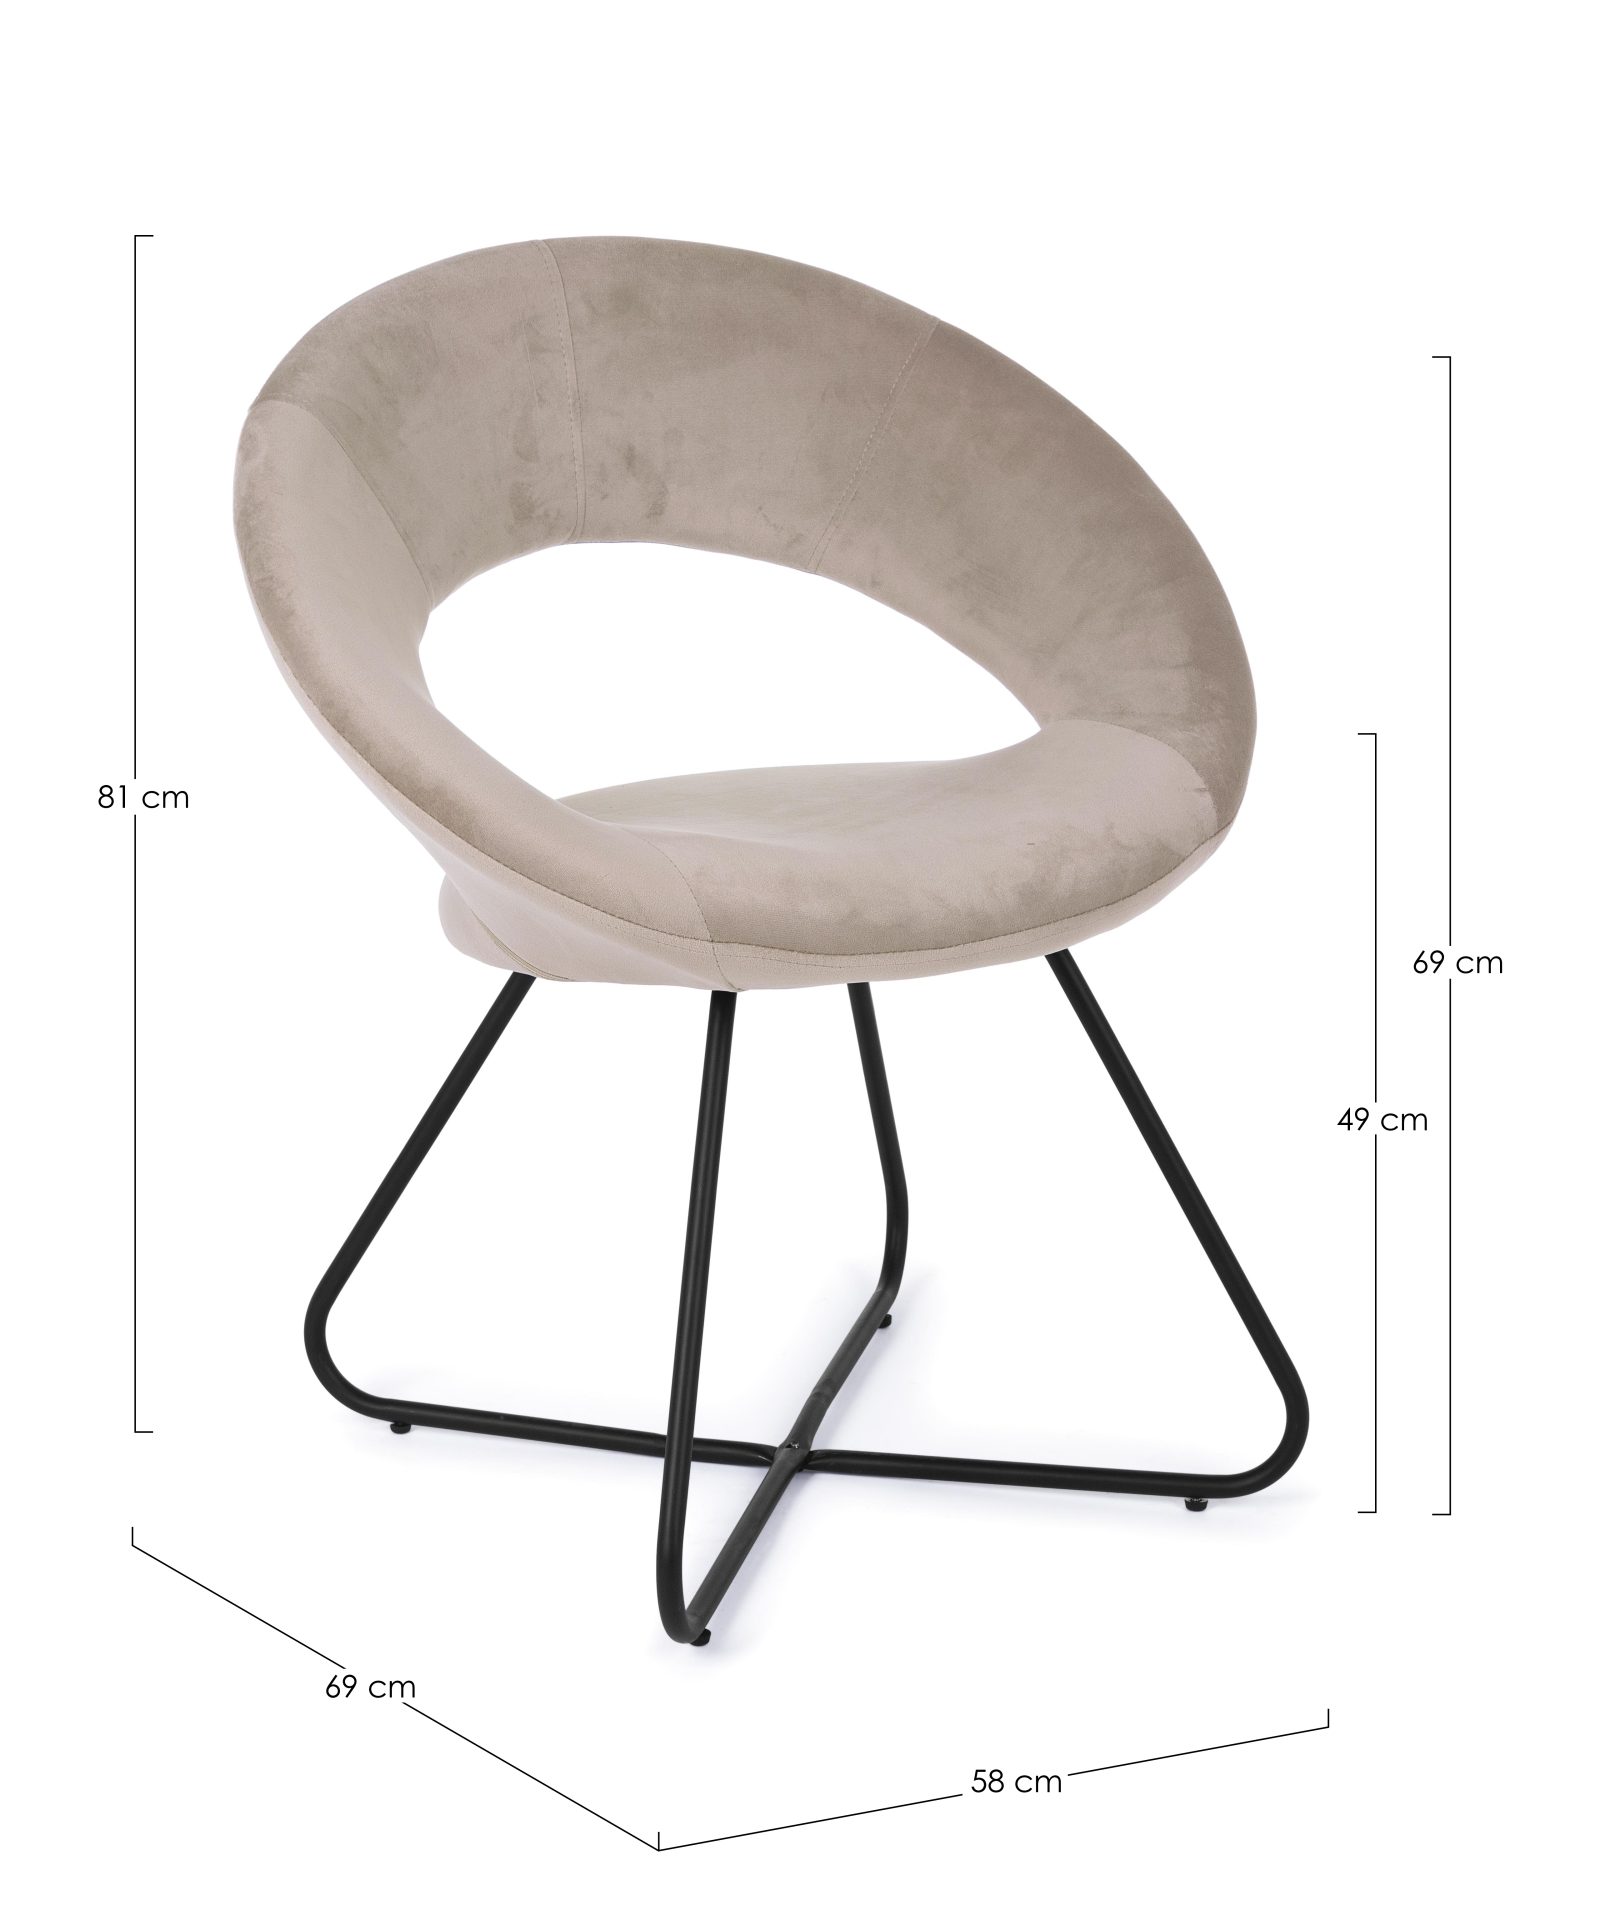 Der Sessel Vanity überzeugt mit seinem modernen Design. Gefertigt wurde er aus Stoff in Samt-Optik, welcher einen Taupe Farbton besitzt. Das Gestell ist aus Metall und hat eine schwarze Farbe. Der Sessel besitzt eine Sitzhöhe von 49 cm. Die Breite beträgt